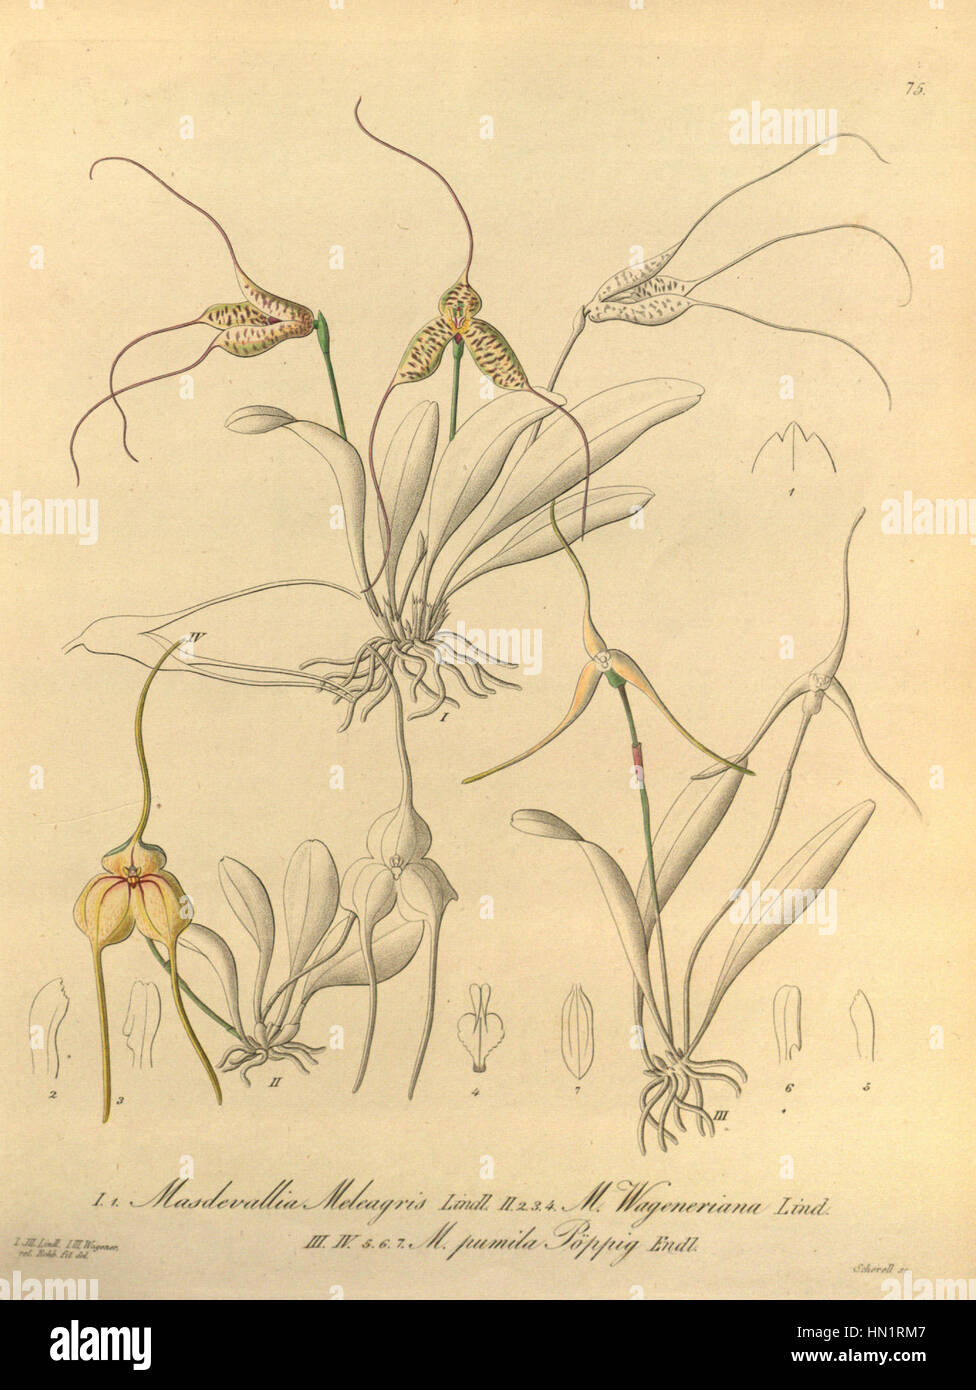 Masdevallia meleagris-Masdevallia wageneriana-Masdevallia pumila - Xenia 1-75 (1858) Stock Photo